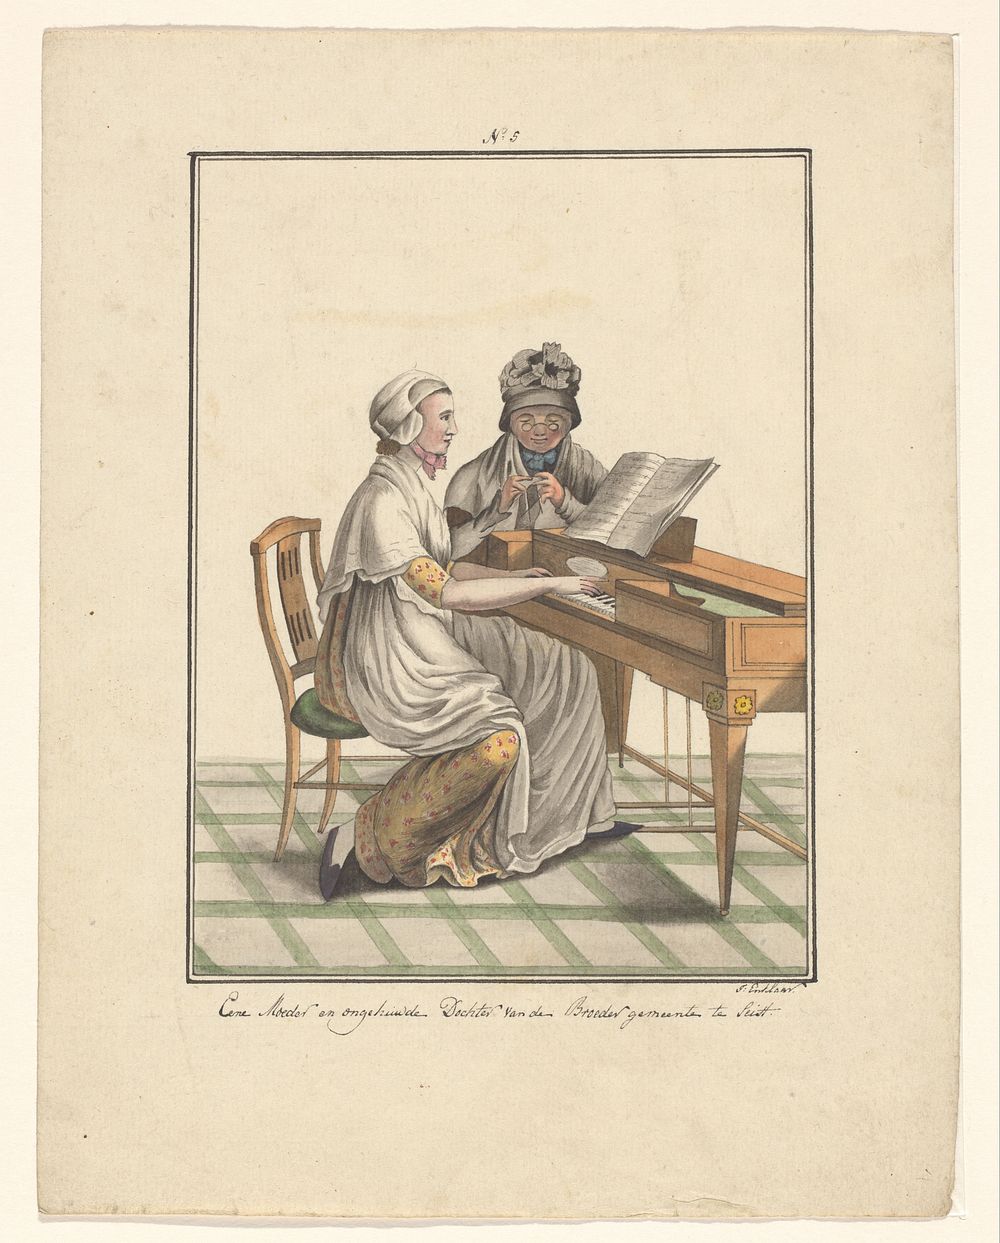 Moeder en dochter van de Evangelische Broedergemeente (in or after 1803 - c. 1899) by J Enklaar and Ludwig Gottlieb Portman